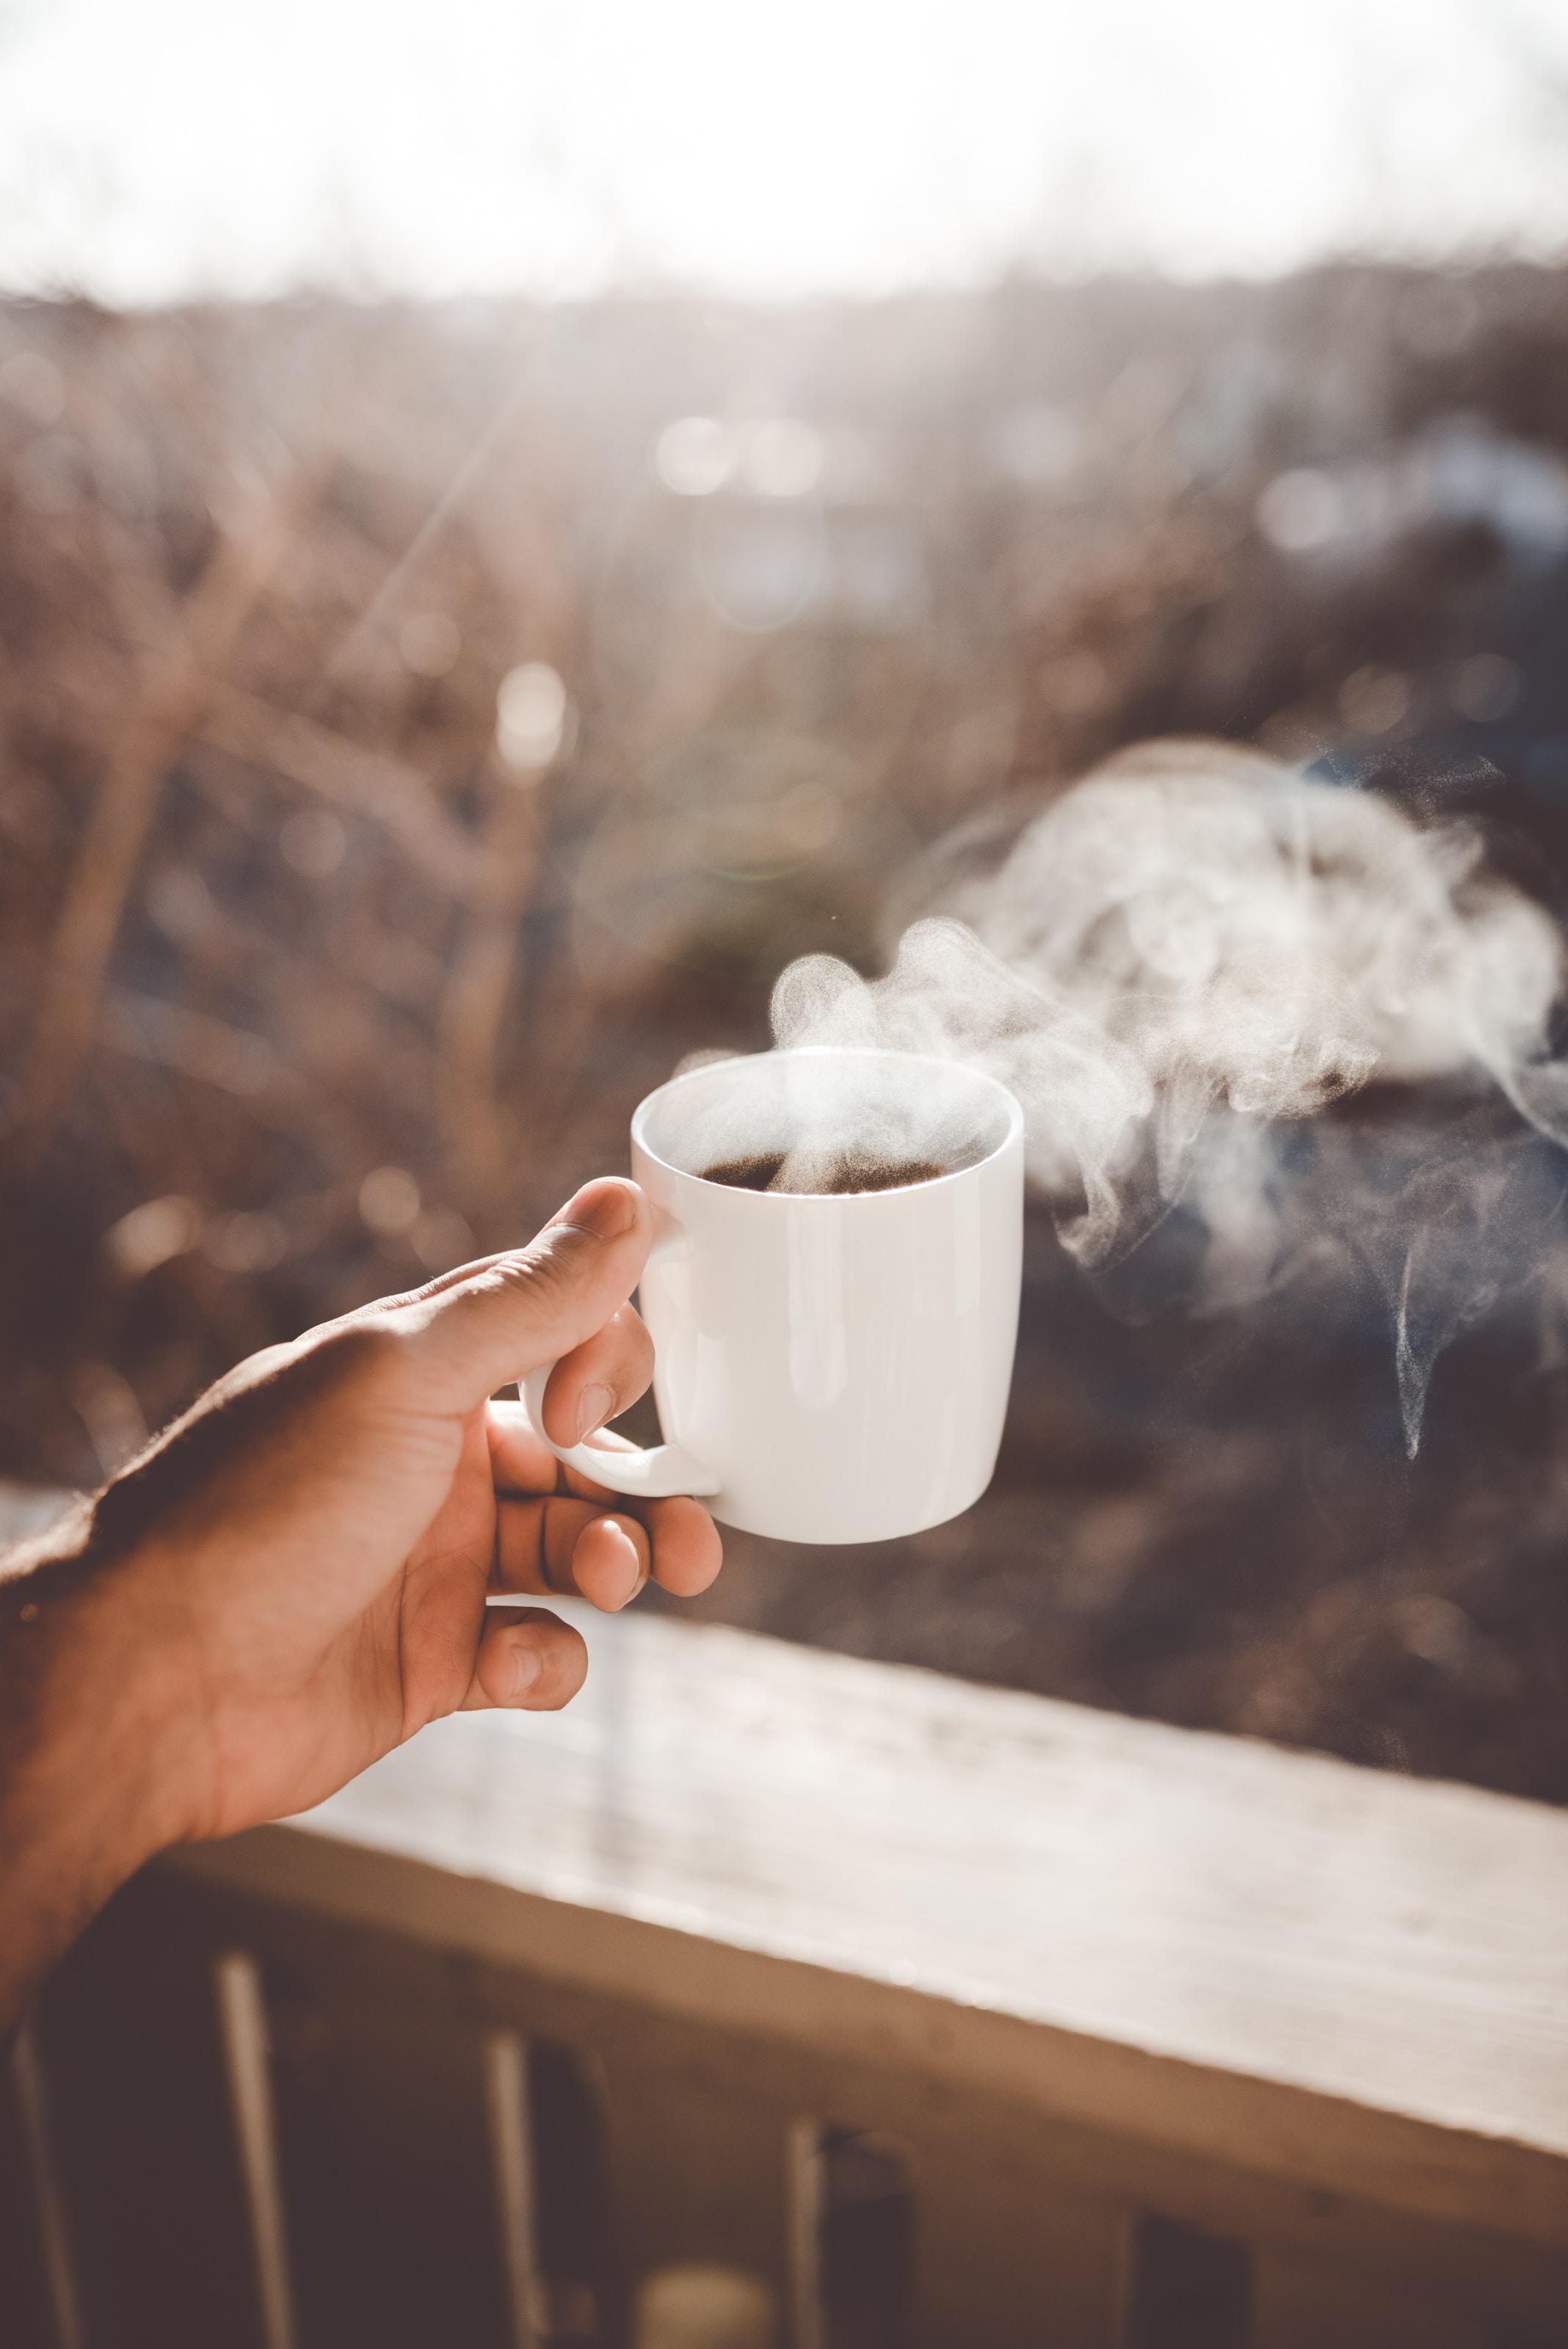 Kawa a uchyłki jelita grubego - czy można pić kawę przy problemach z jelitami? Zespół jelita drażliwego - czy kawa szkodzi jelitom? Zapalenie jelita grubego. Jak wygląda sytuacja u chorych na raka jelita grubego? 